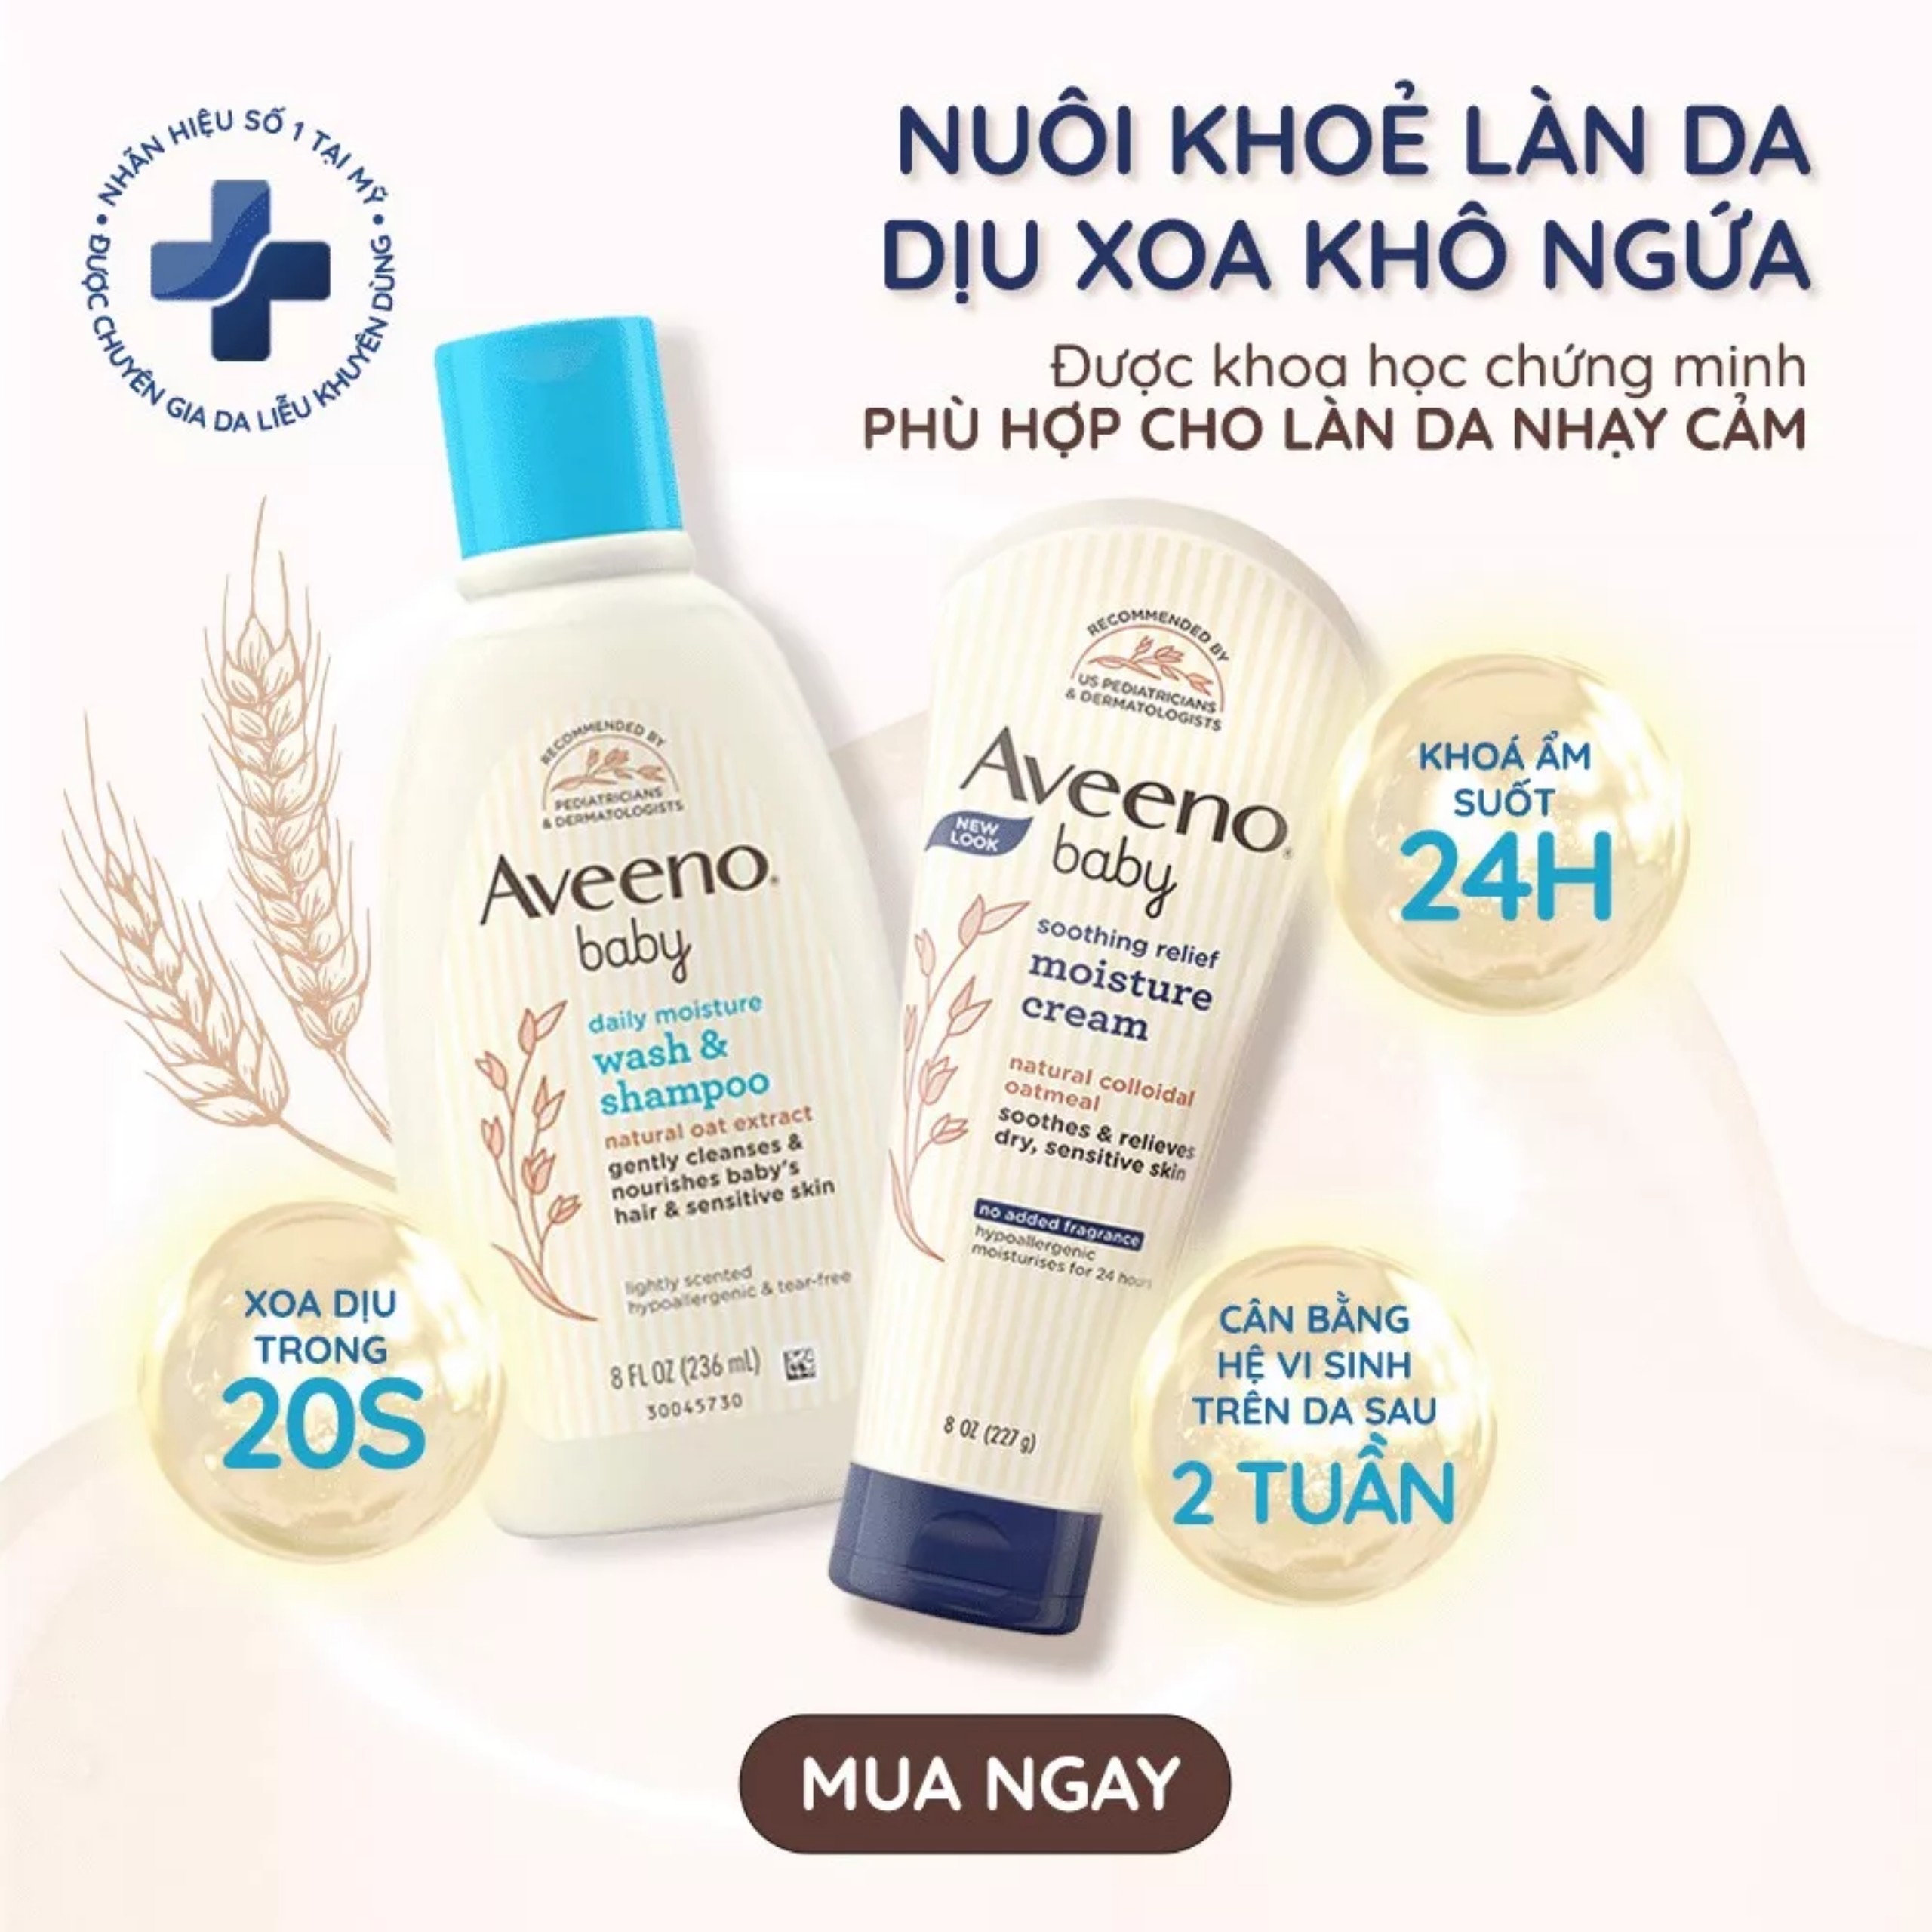 Kem dưỡng ẩm Aveeno Baby cho da khô và nhạy cảm 227g